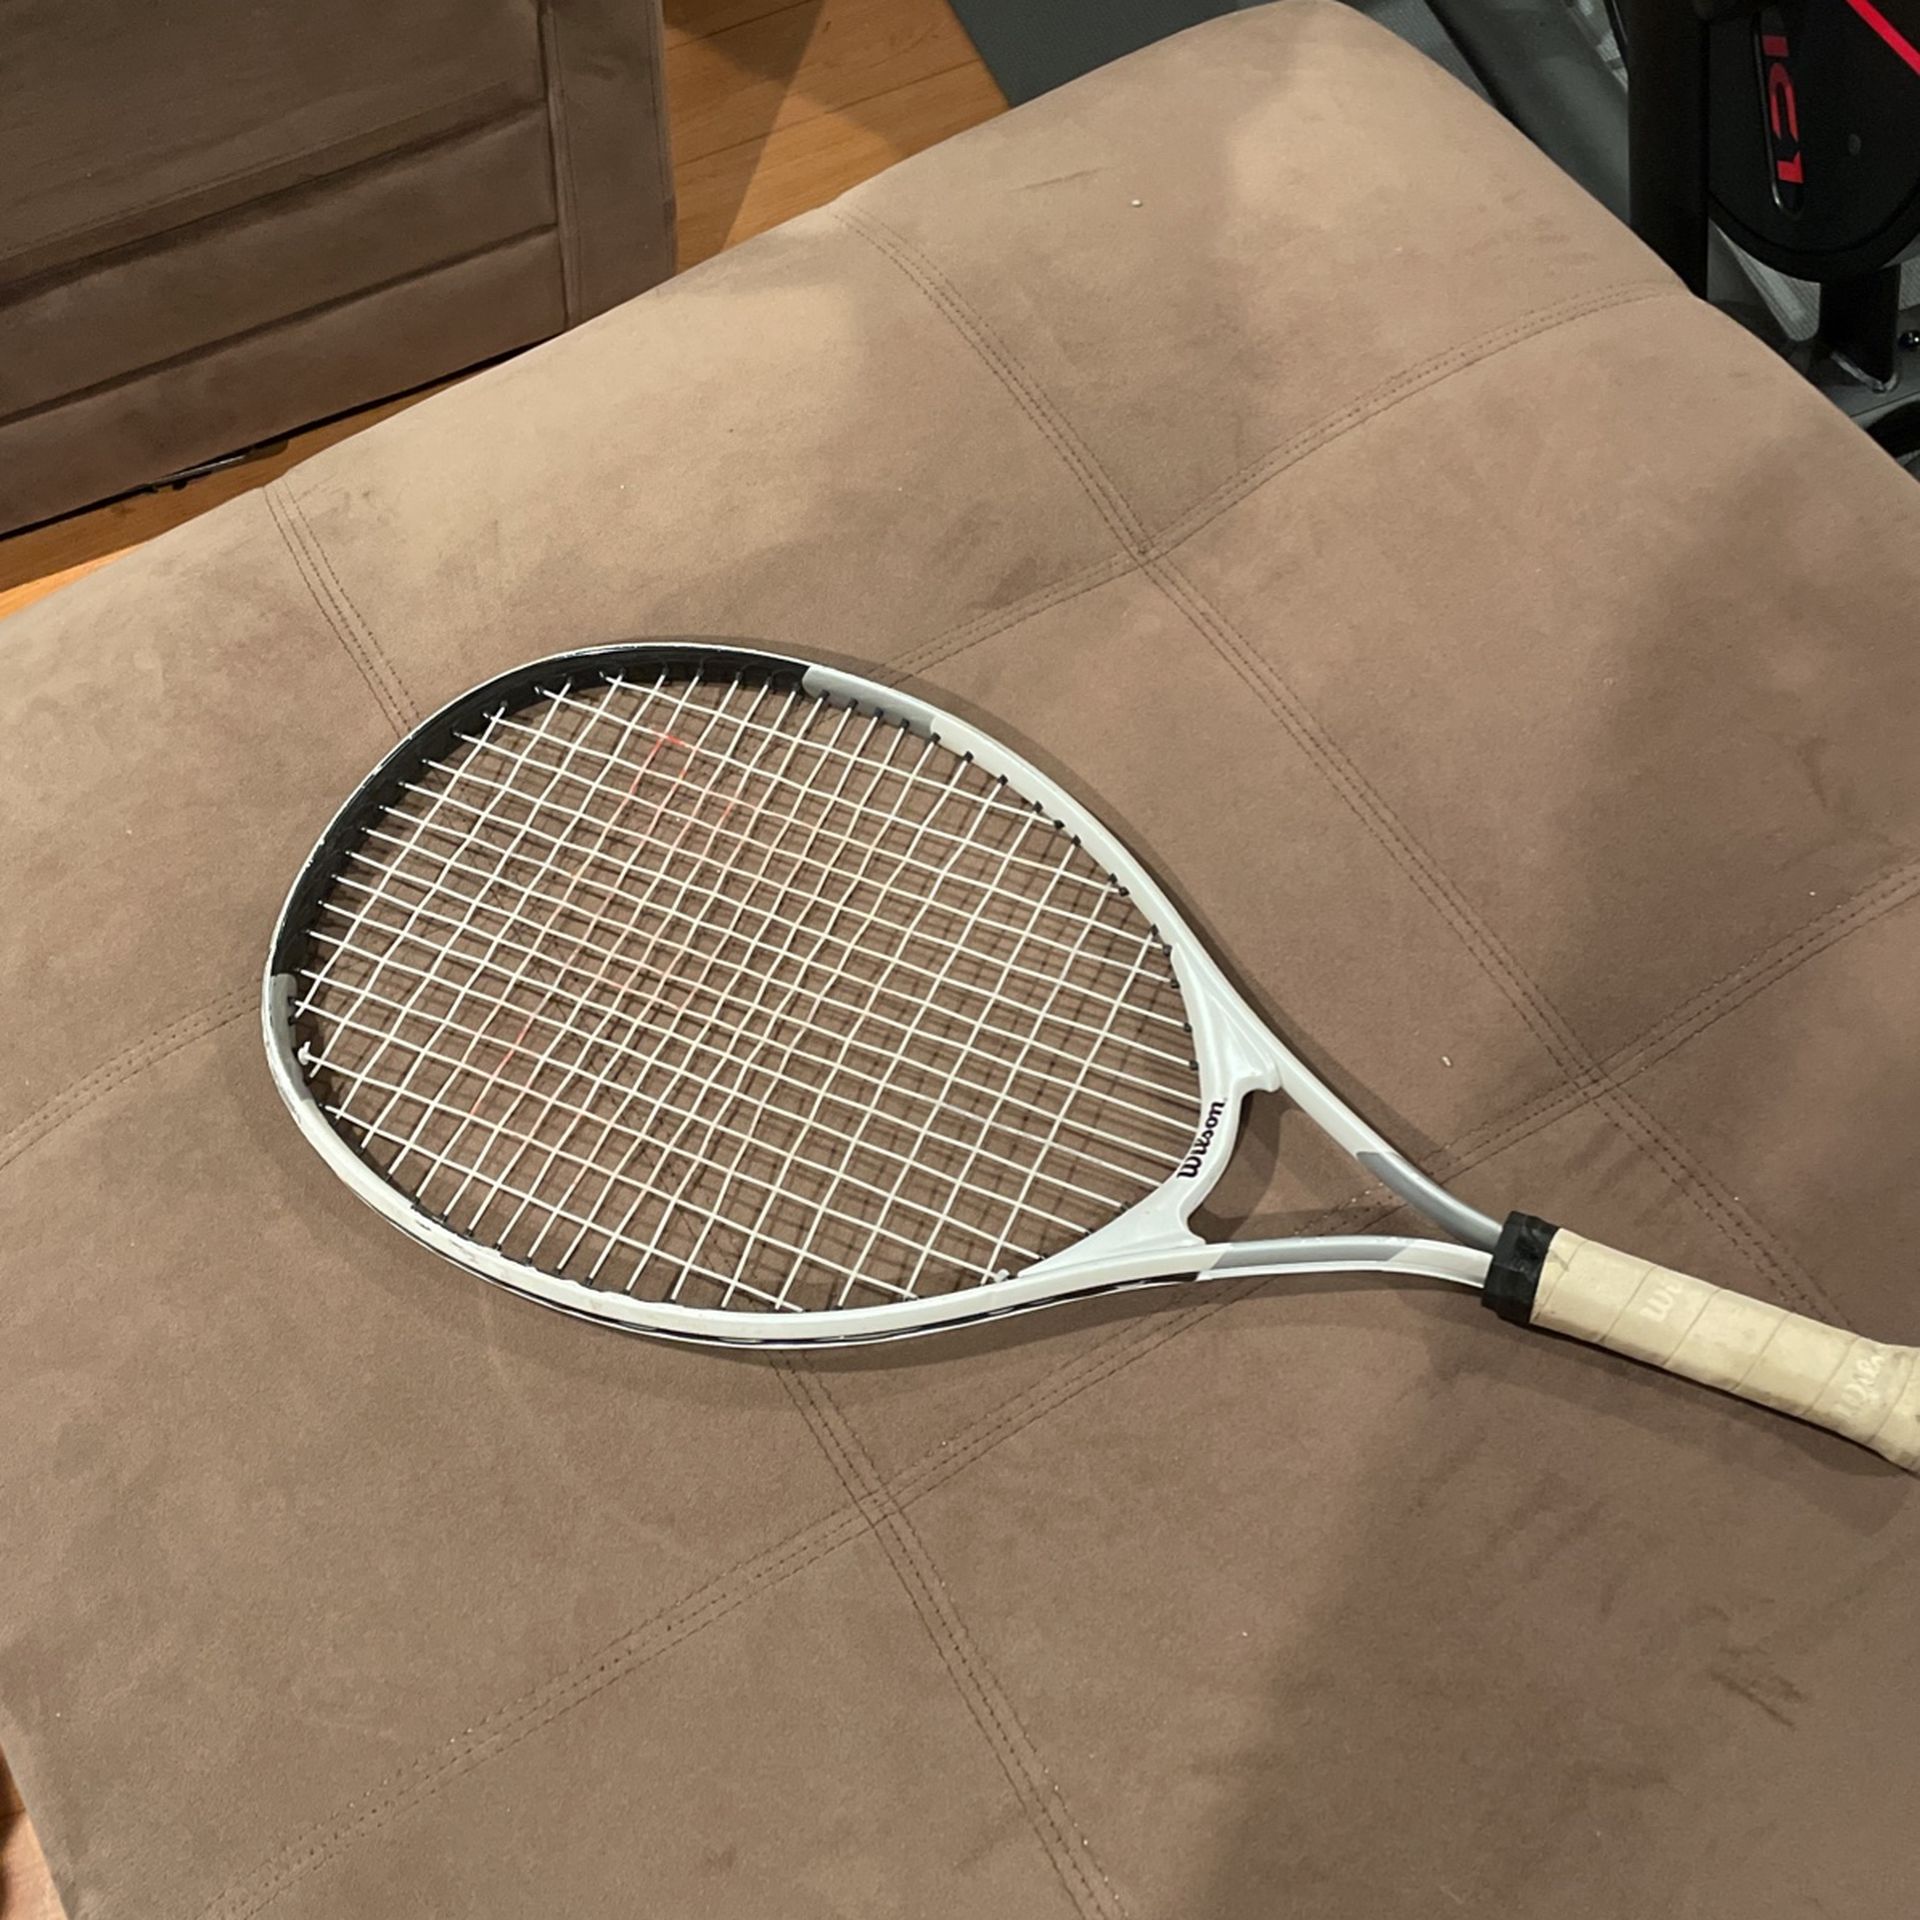 Child Tennis Racket 